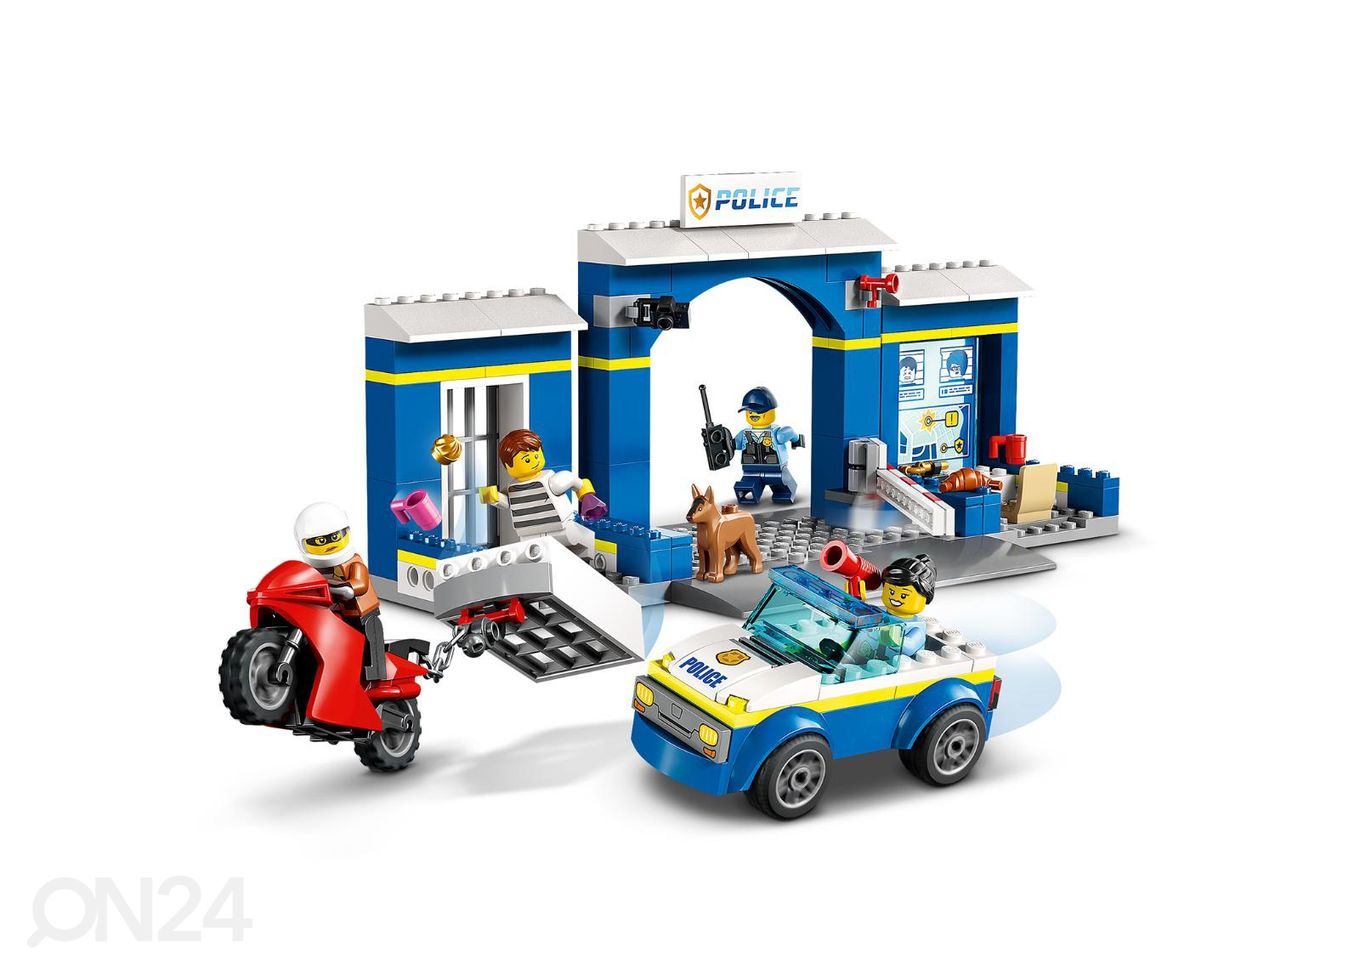 LEGO City Погоня в полицейском участке увеличить